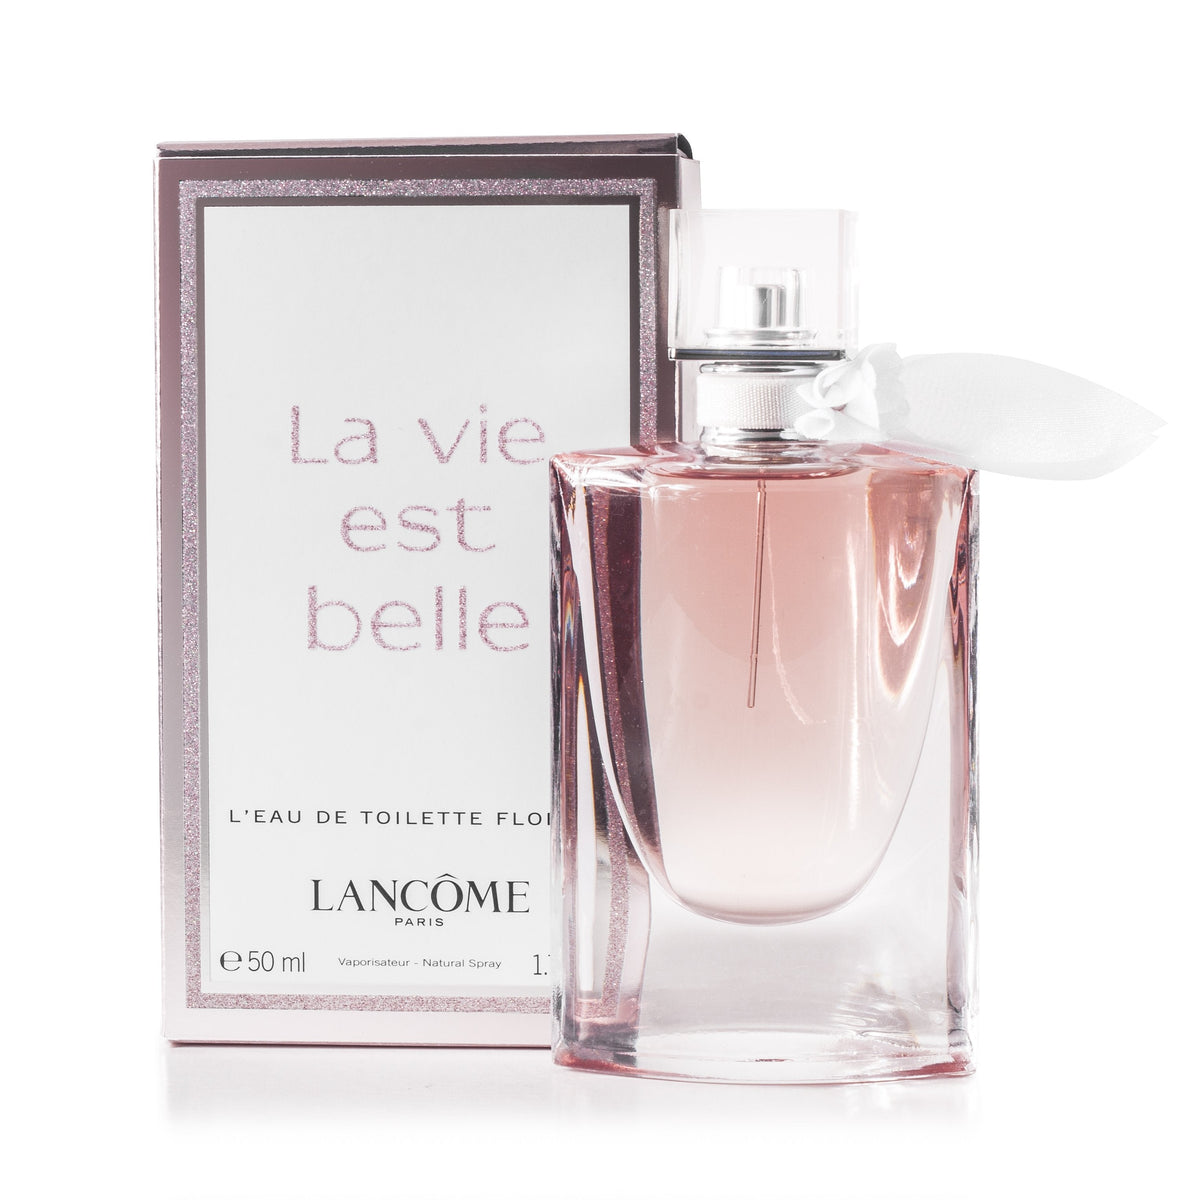 La Vie Est Belle Florale Eau de Toilette Spray for Women by Lancome 1.7 oz.